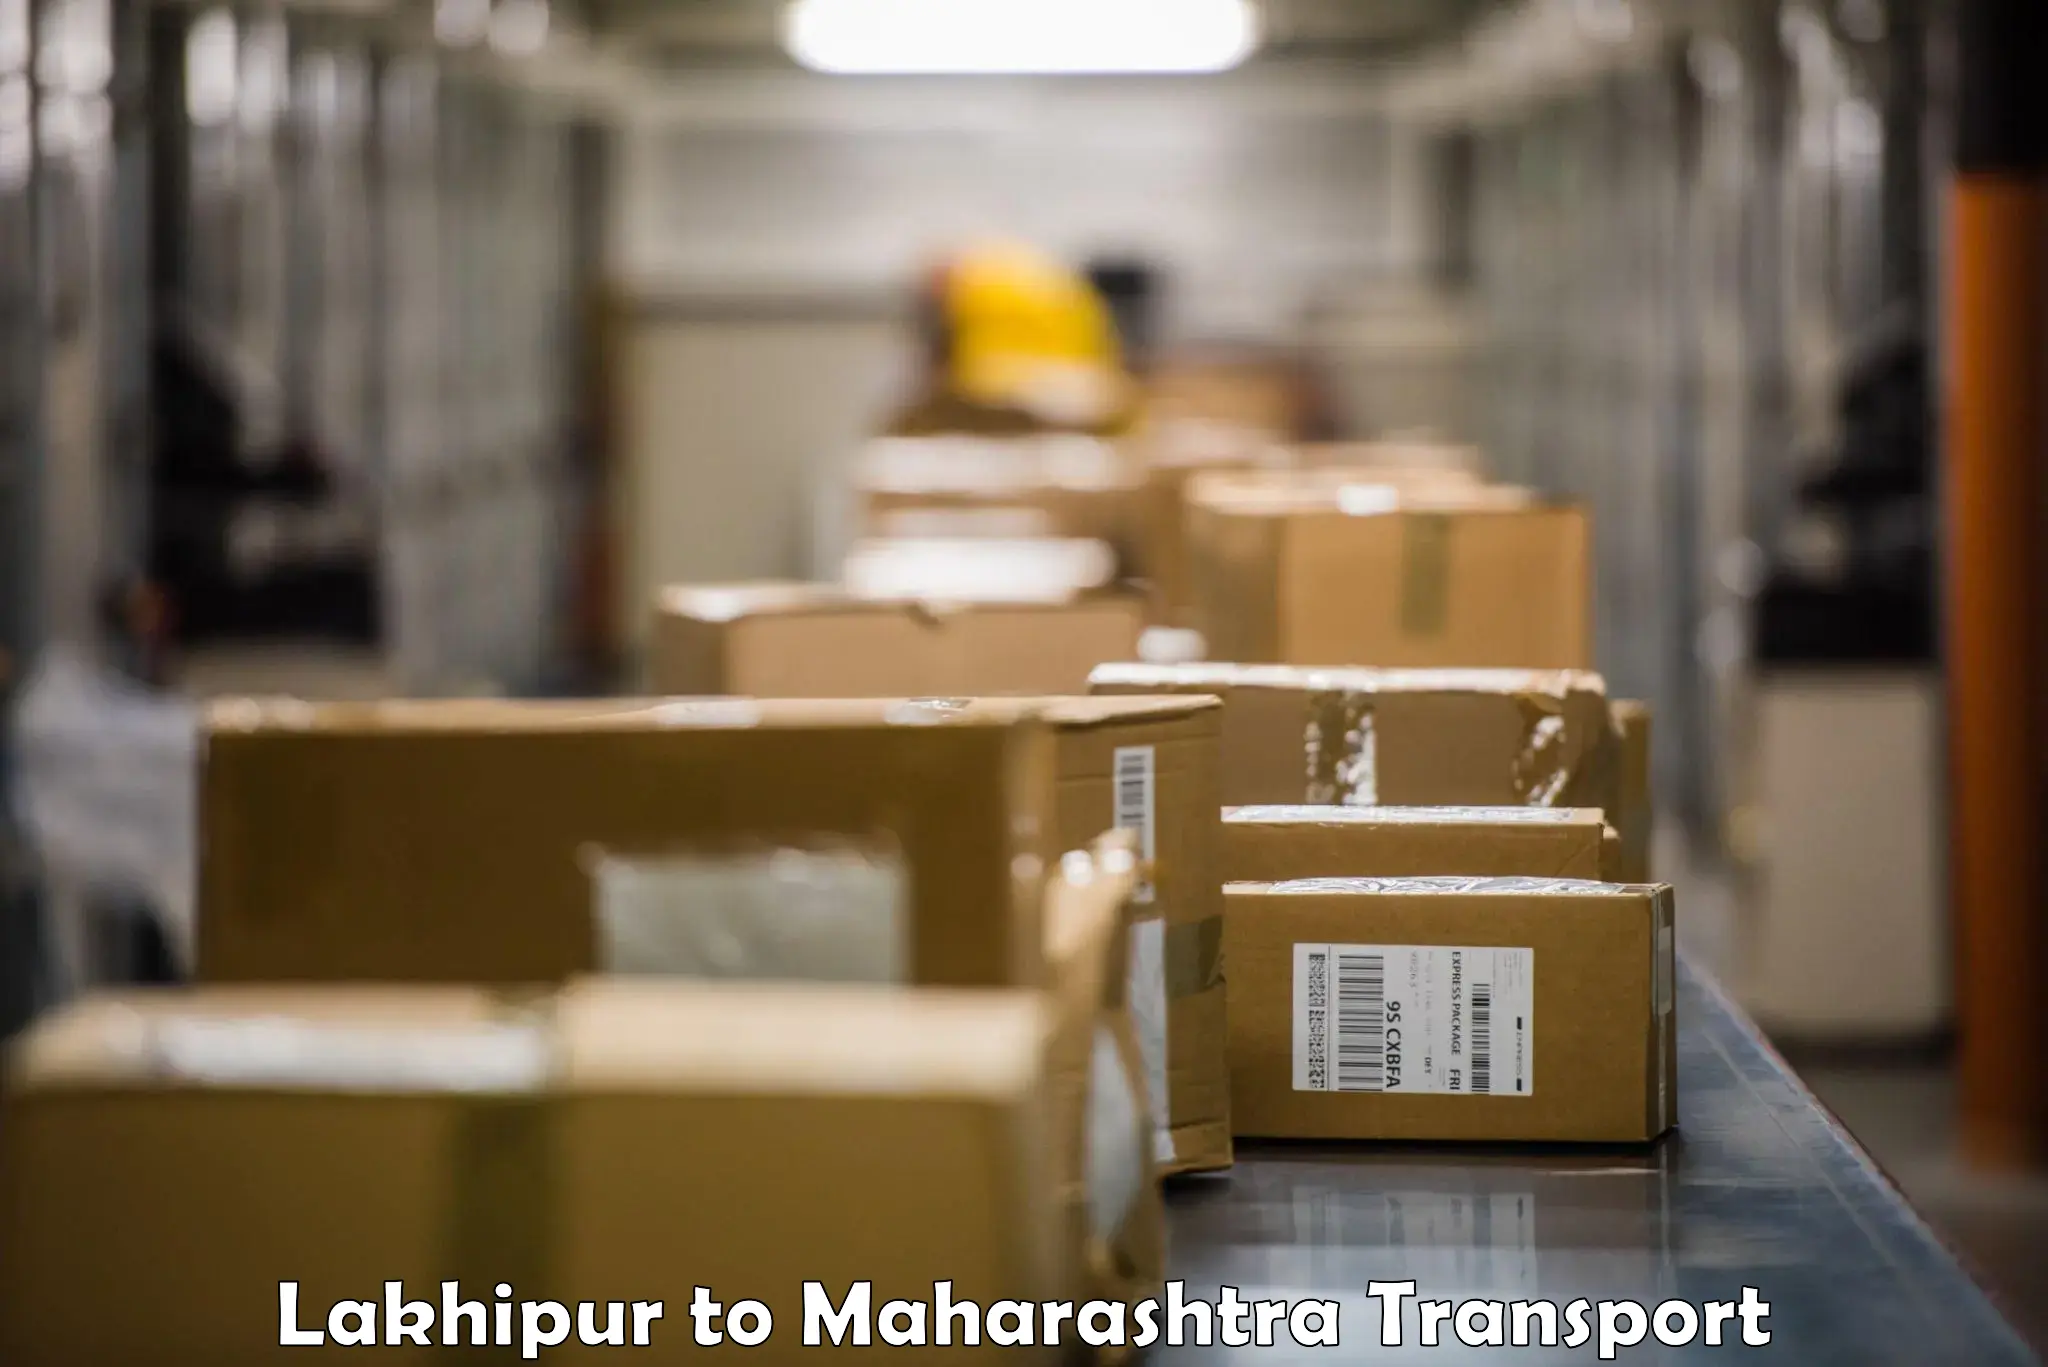 Shipping partner Lakhipur to Kurduvadi